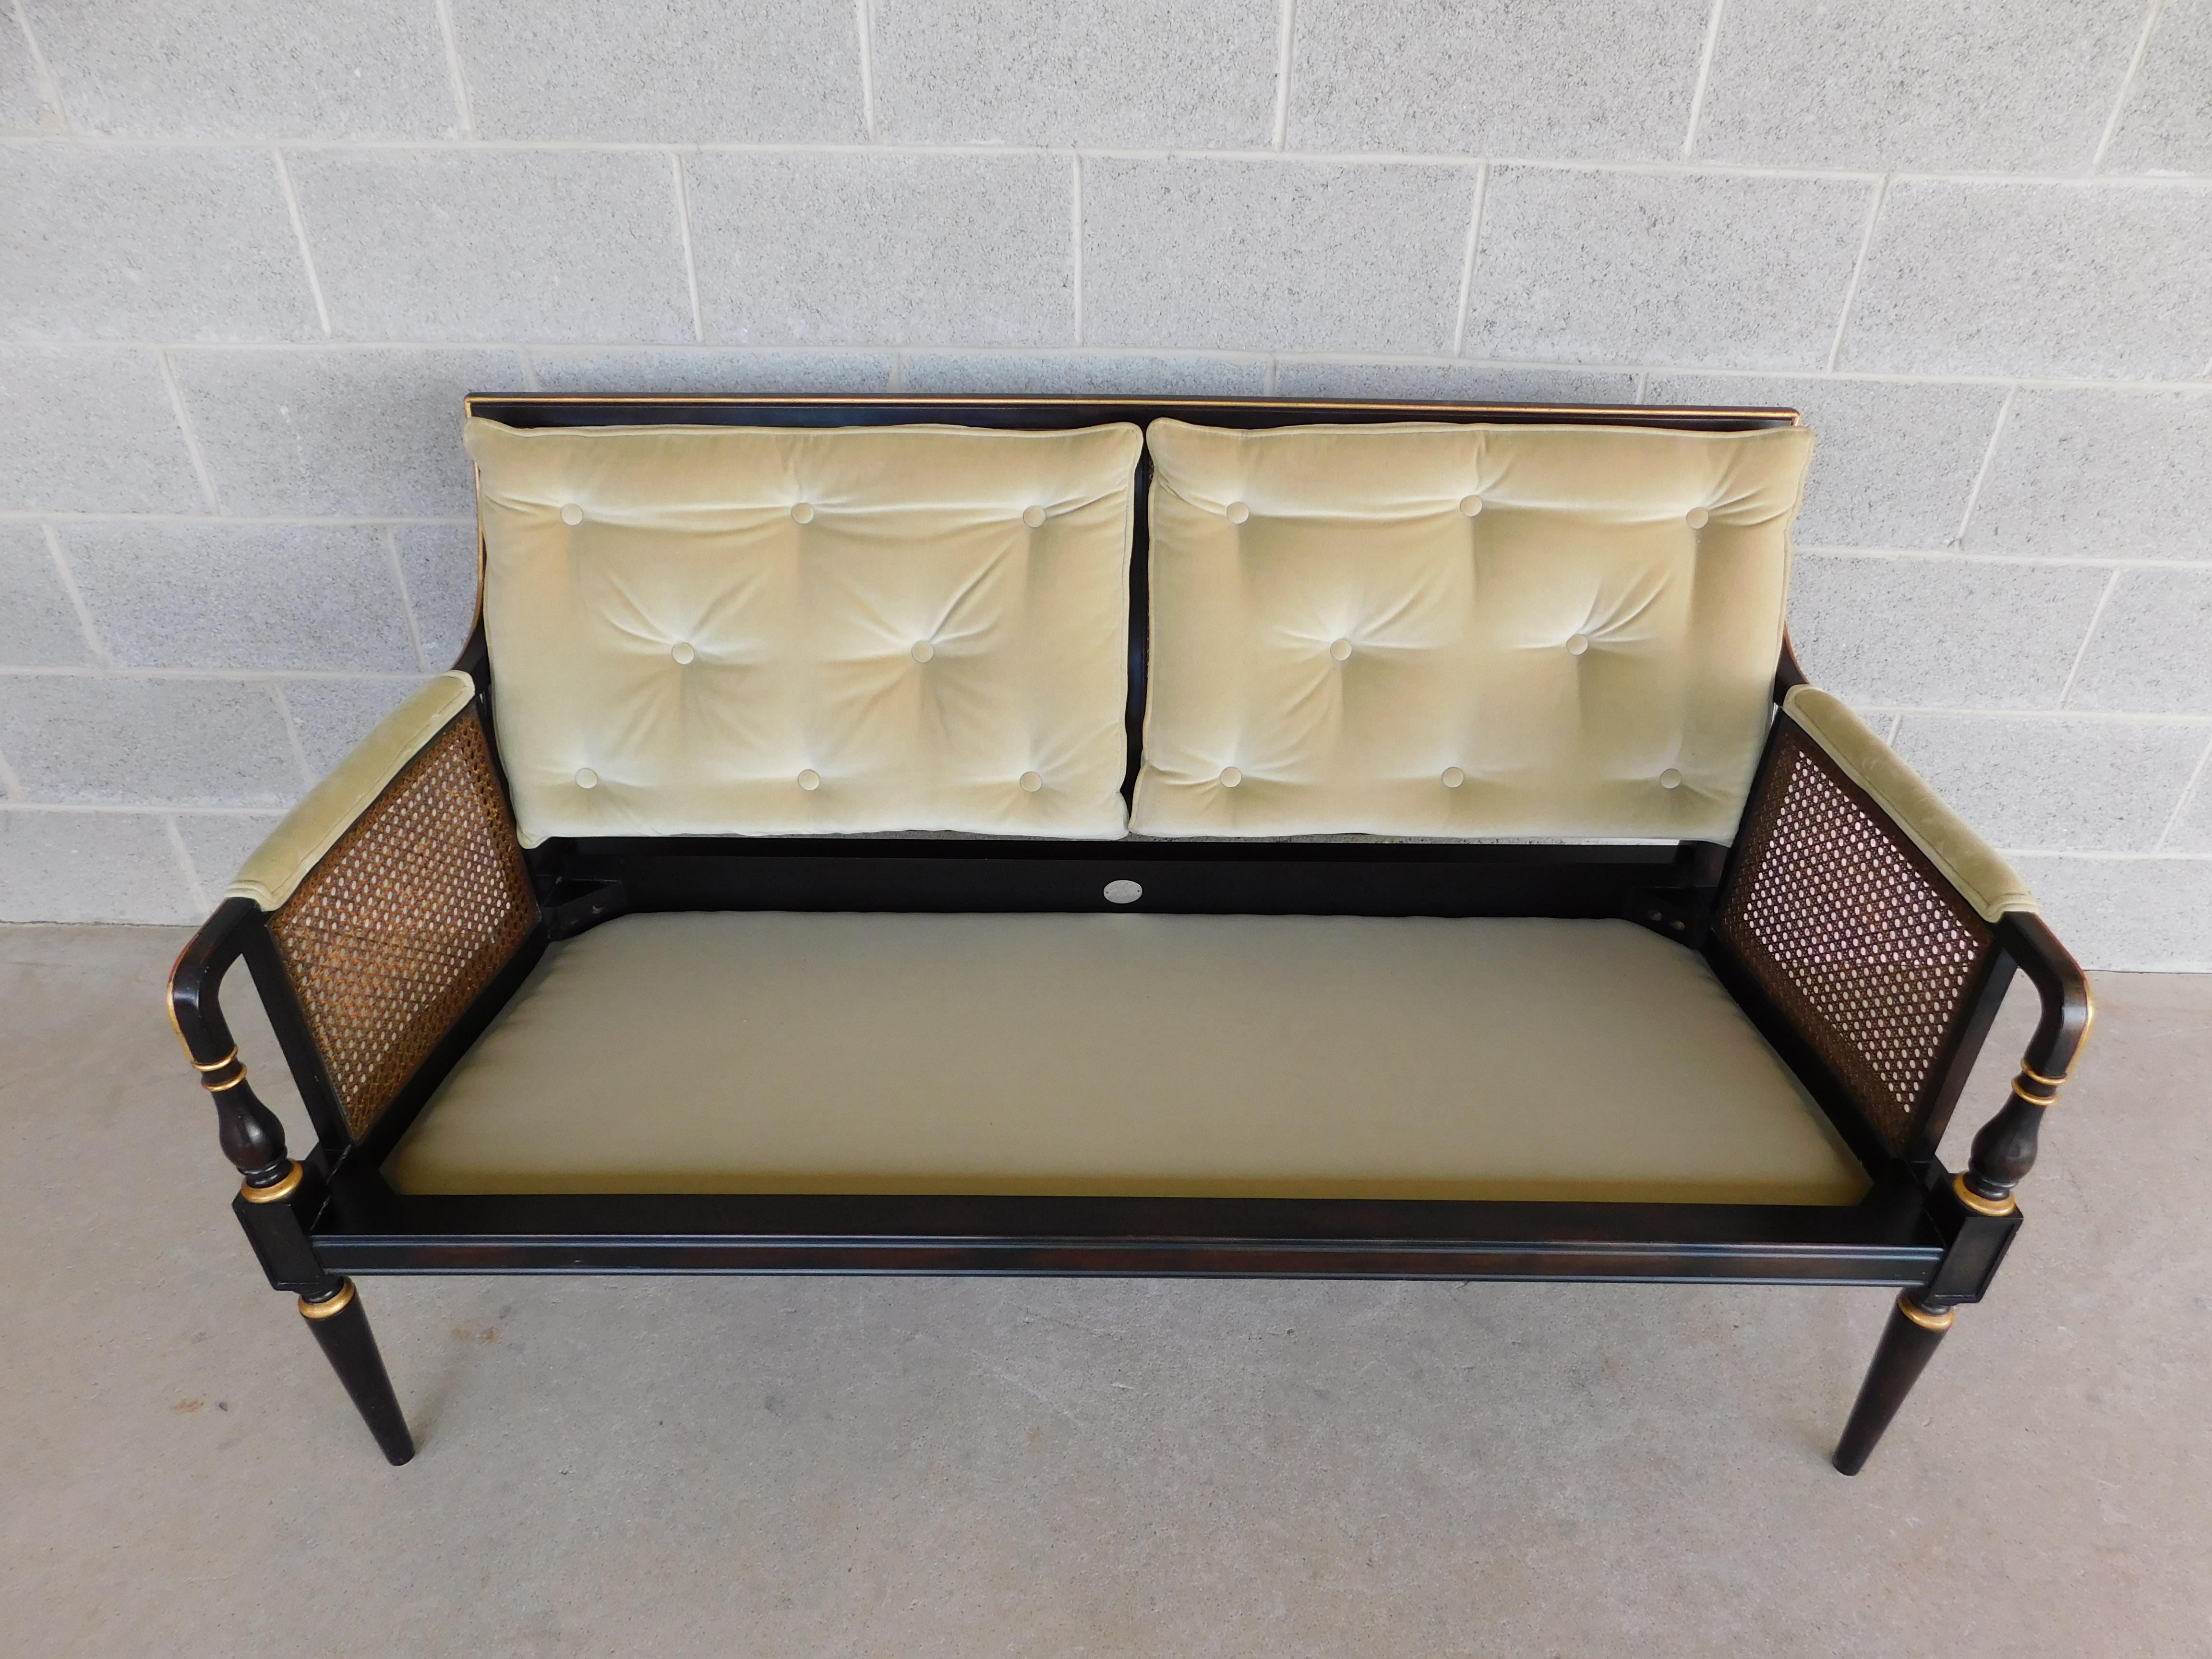 Midcentury Baker Furniture Regency Style Sofa mit schwarz lackiertem Rahmen. Serpentinenförmige Rückenlehne im Lendenwirbelbereich mit Caning in der Mitte. Gerollte Armlehnen über geschwungene Seiten in konischen Beinen, abnehmbares Sitzkissen.